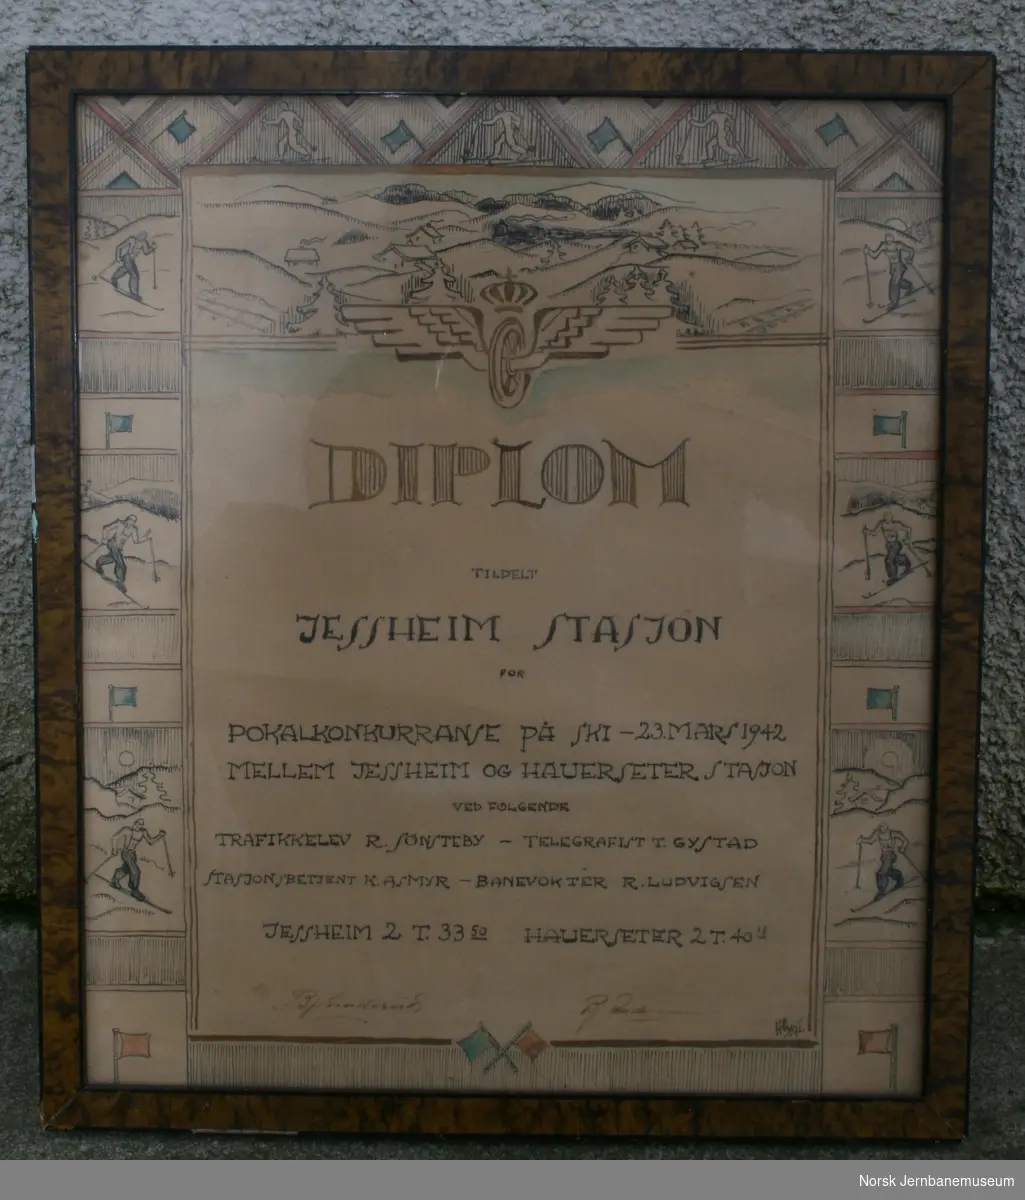 Diplom tildelt Jessheim stasjon for pokalkonkurranse på ski  23.mars 1942 mellem Jessheim og Hauerseter stasjon.